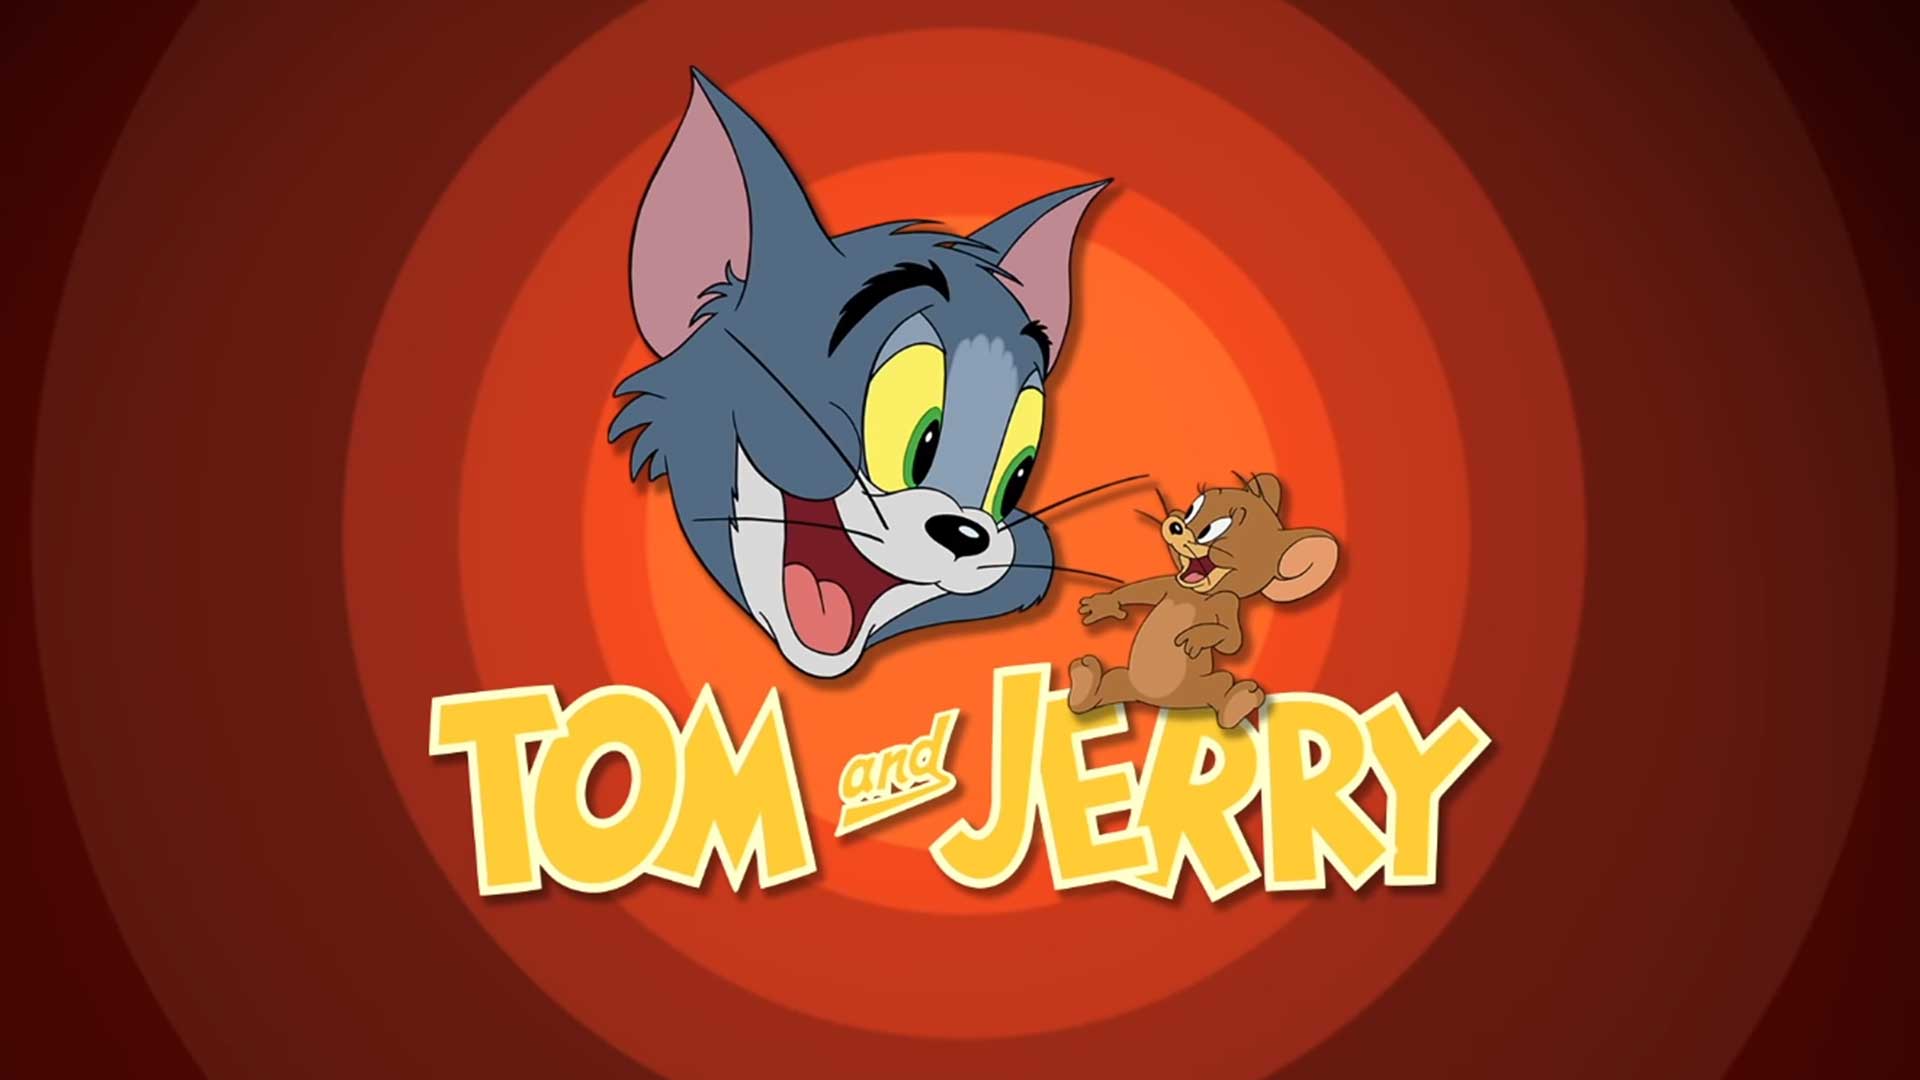 Том и Джерри – 154 серия «Управляемая мышь-ракета или наука на сон грядущий» / Tom and Jerry